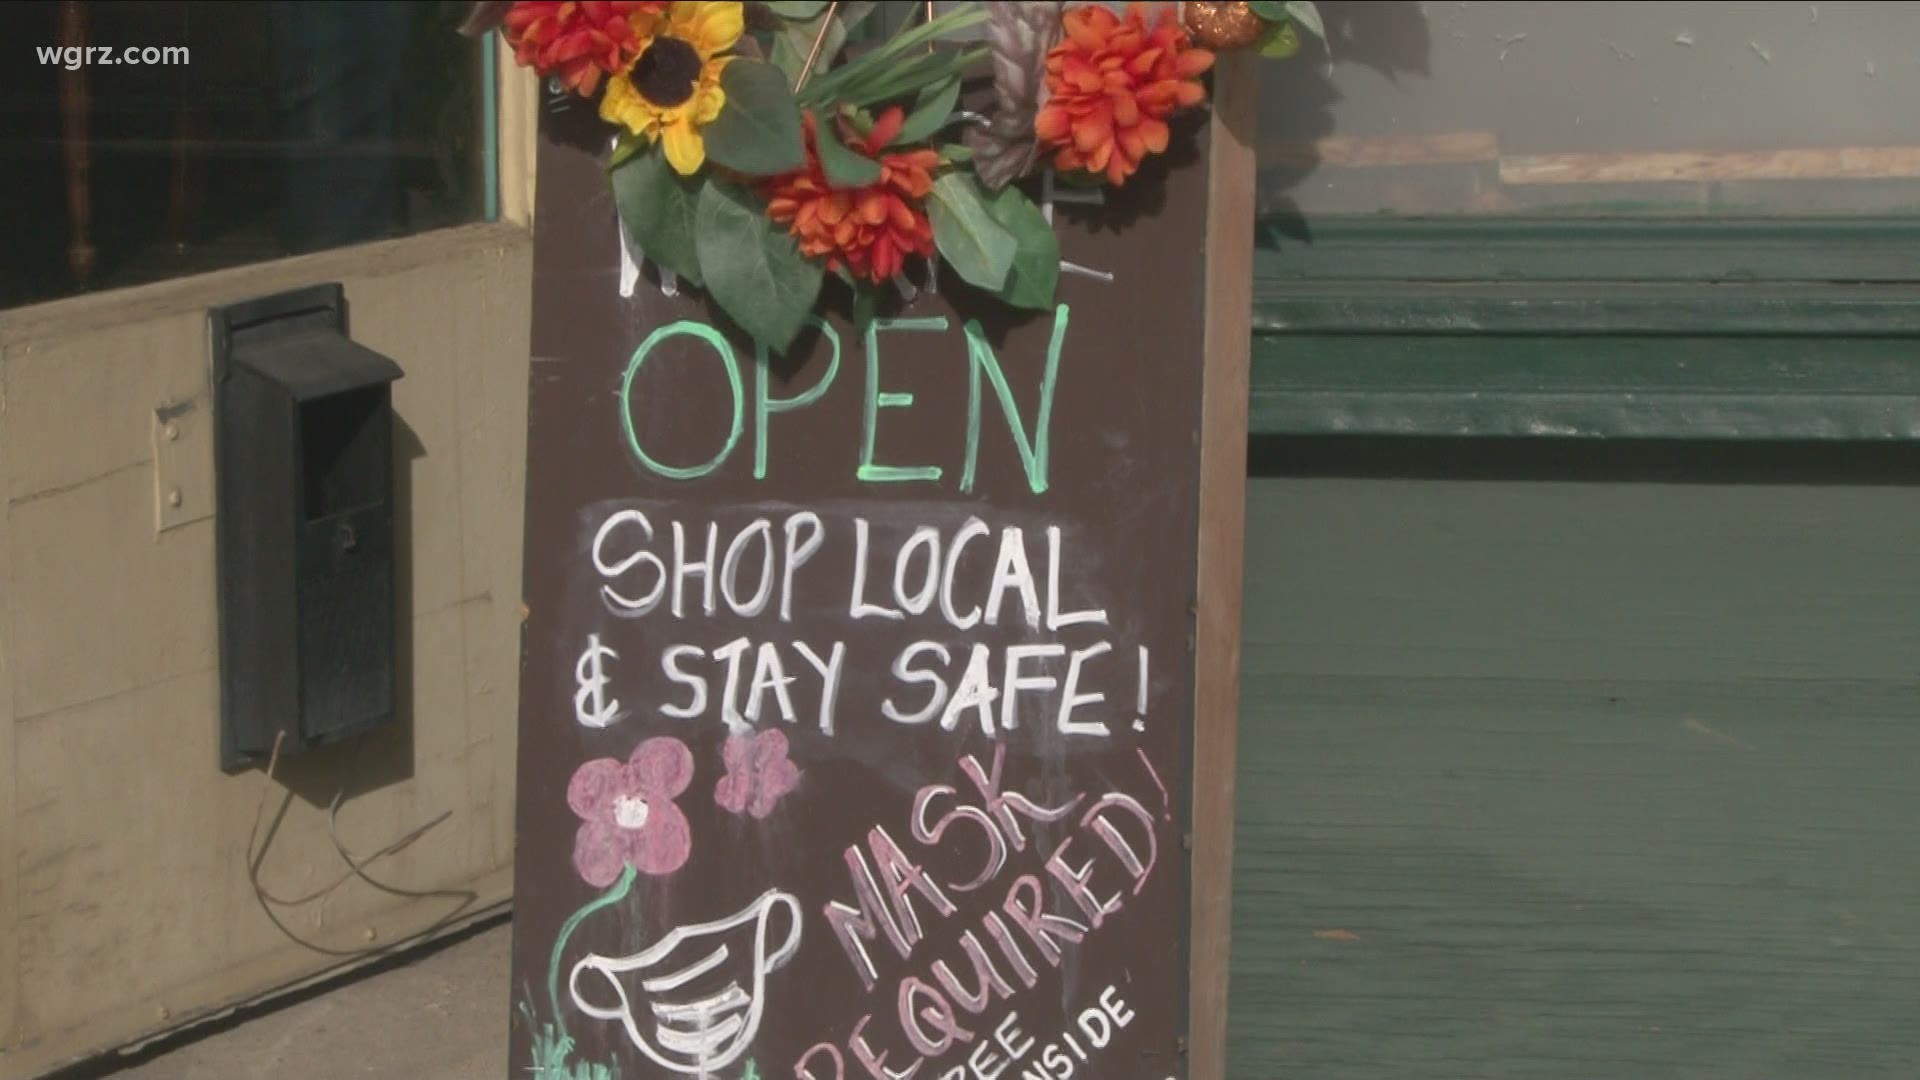 Local stores prepare for Small Business Saturday